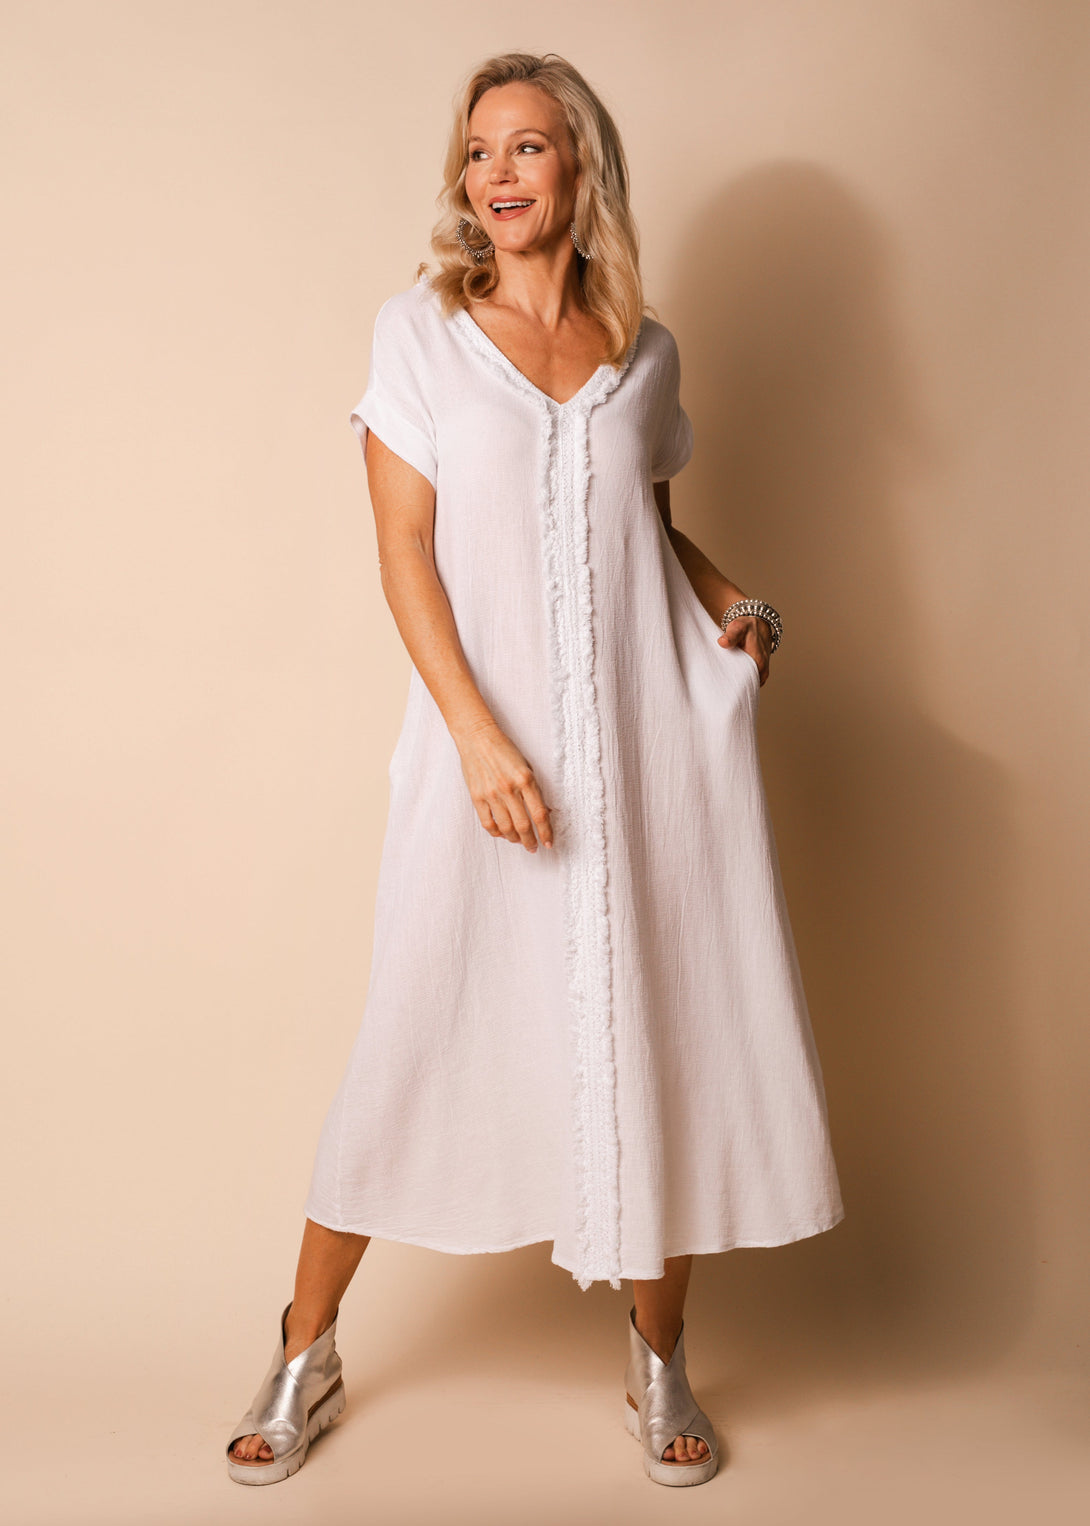 Kaidi Linen Dress in White - Imagine Fashion